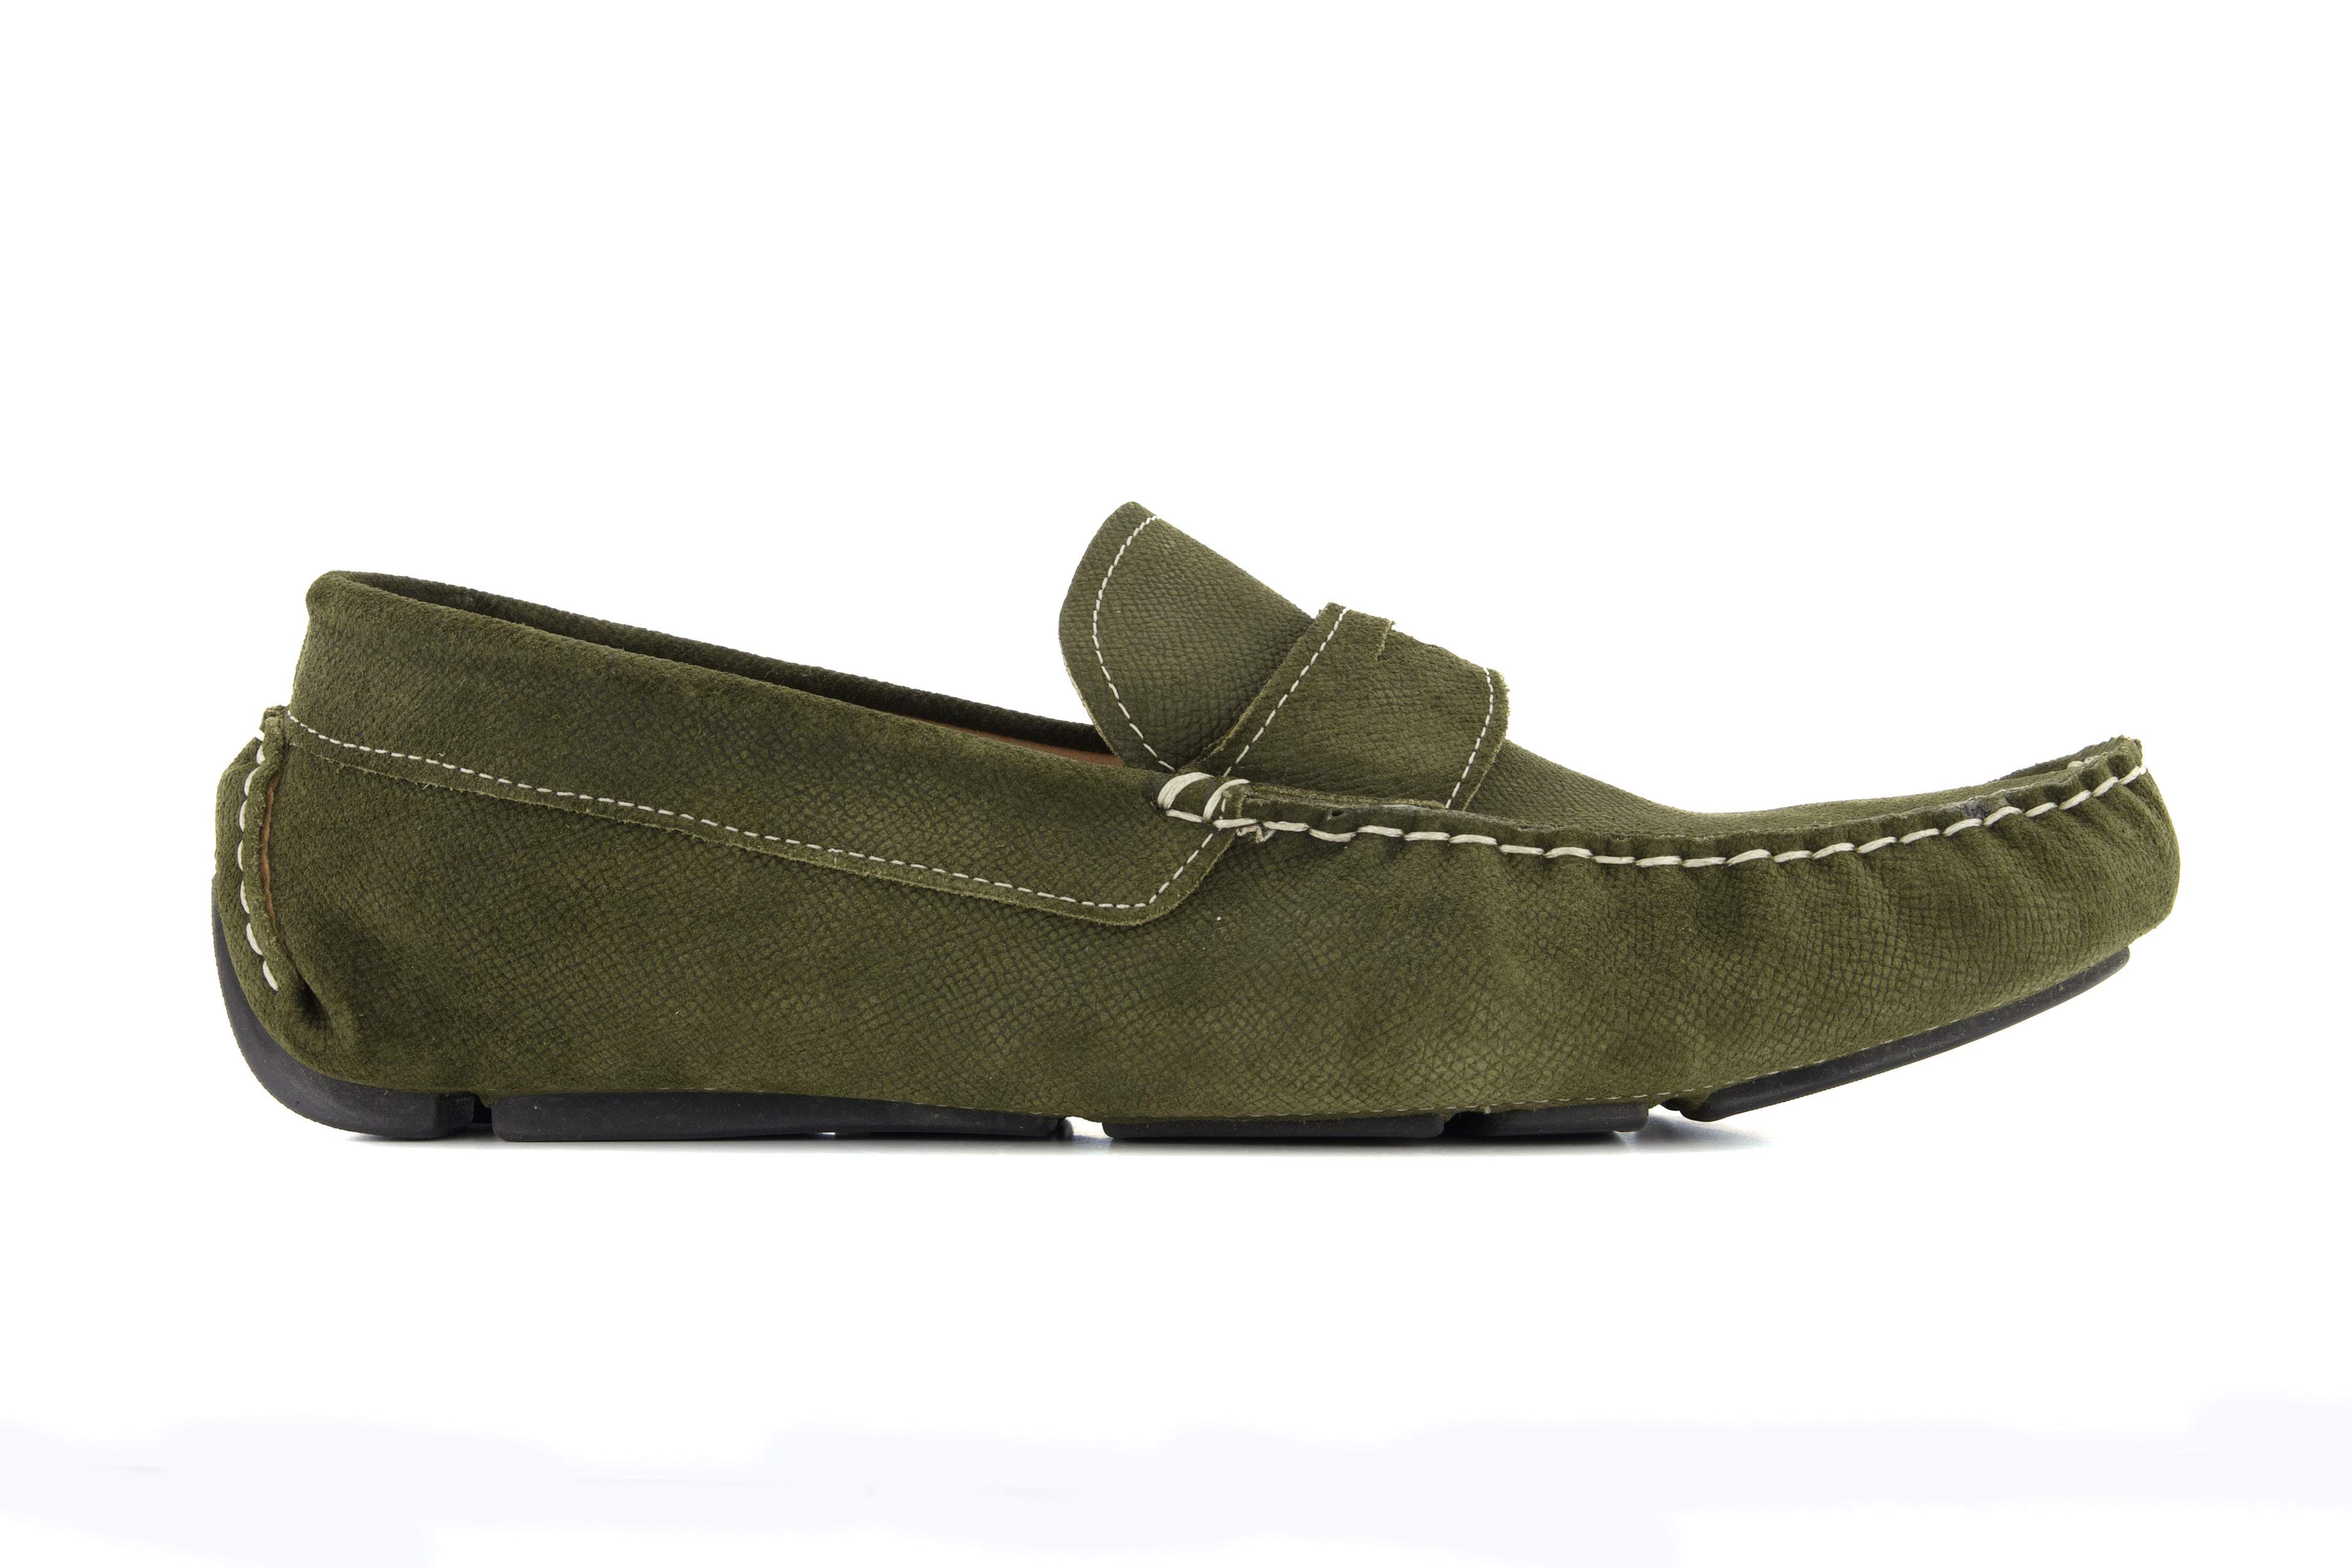 Portofino Driving Loafers - Green Suede